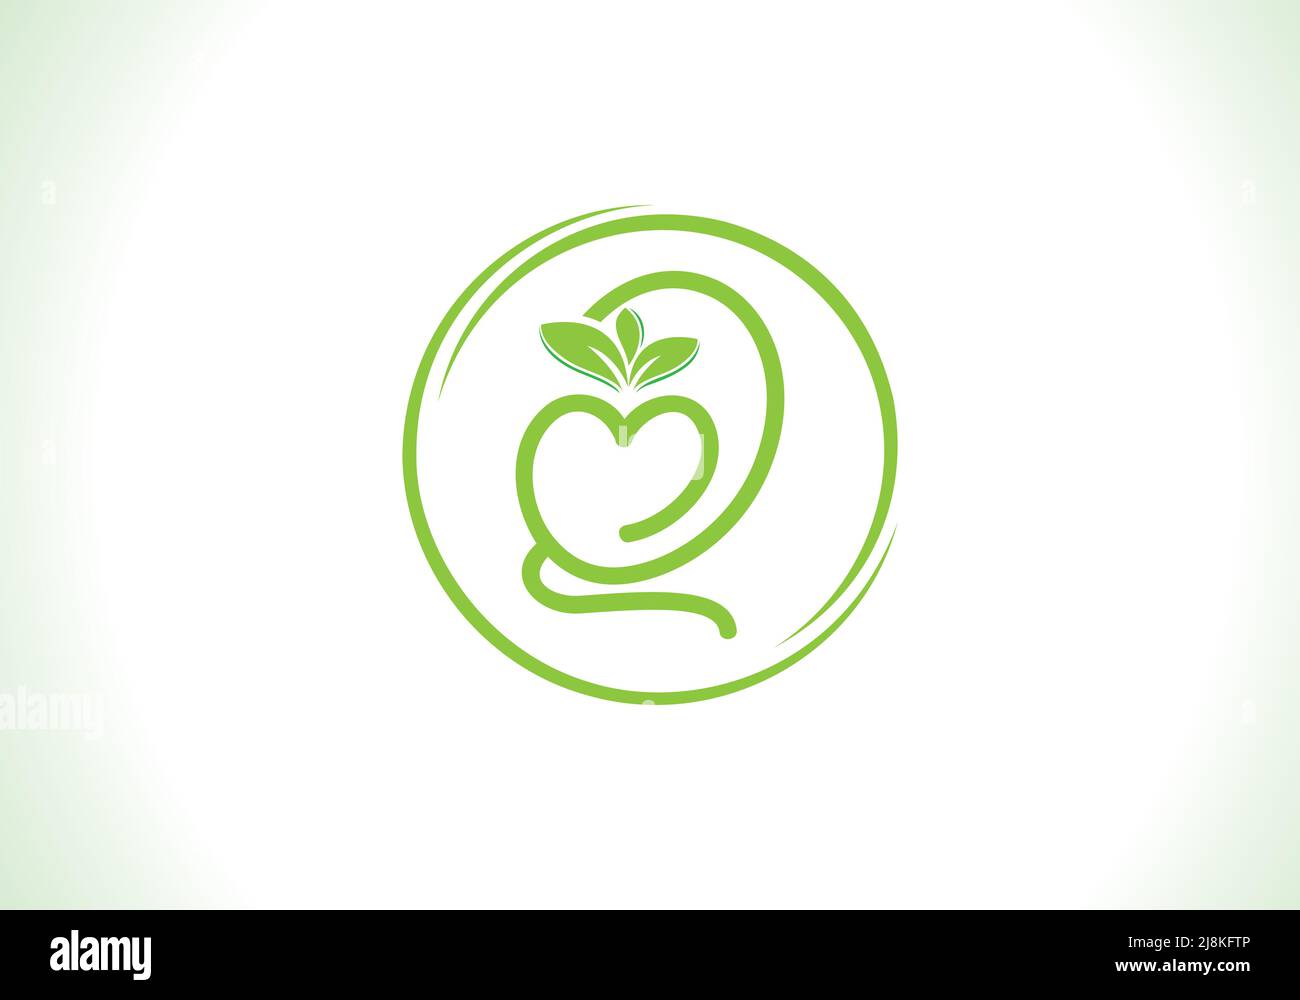 Ernährung und grüne gesunde Blatt mit Liebe Schrift Logo Design Vektor und die Buchstaben. Vektor mit grünen Blättern. Liebe Schriftblatt Stock Vektor